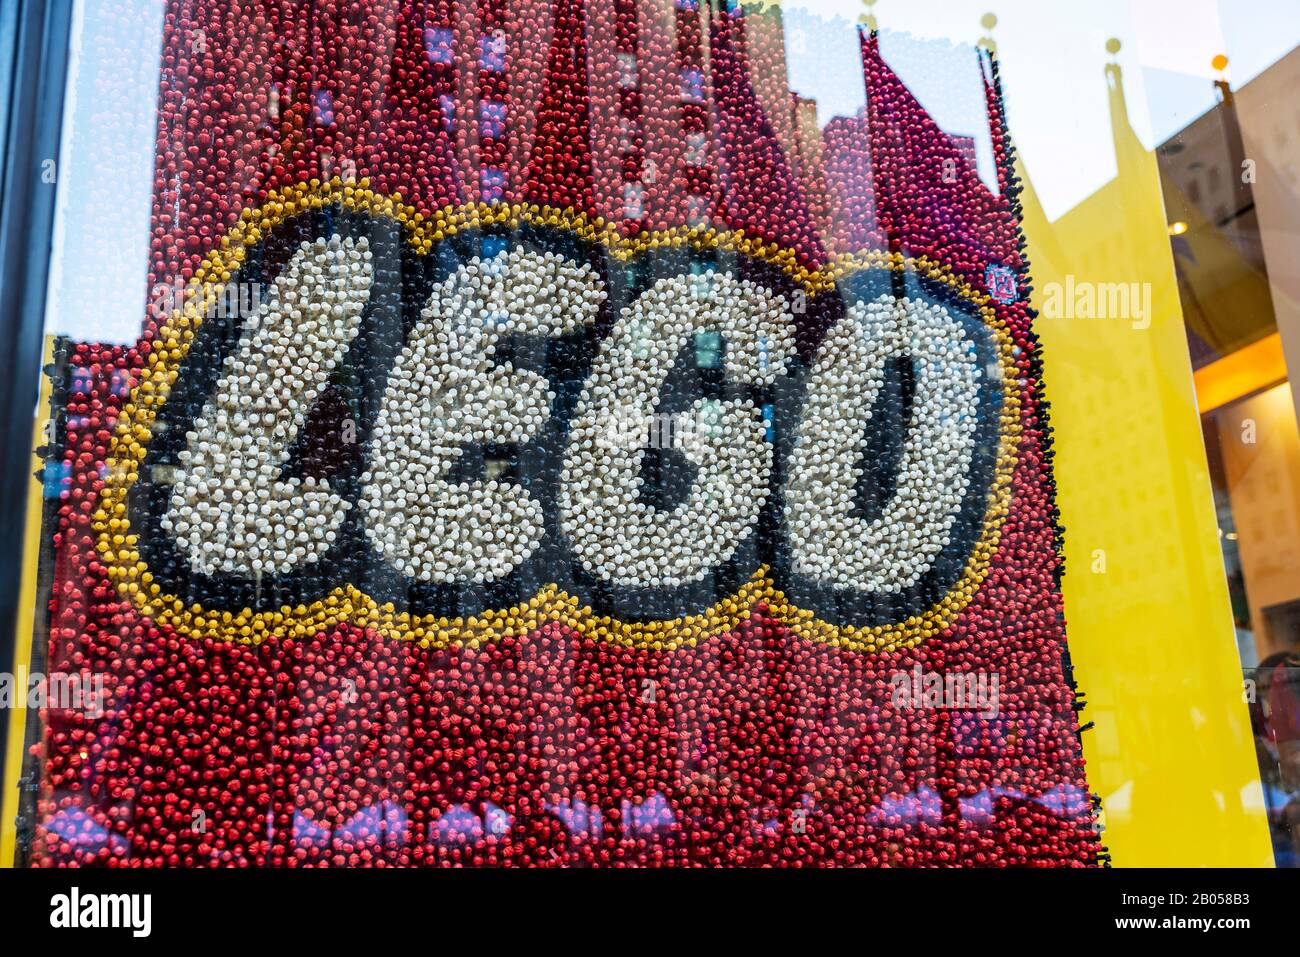 New York City, États-Unis - 3 août 2018: Signe d'une boutique Lego, connue pour la fabrication de jouets de marque Lego, consistant principalement en bric plastique verrouillable Banque D'Images